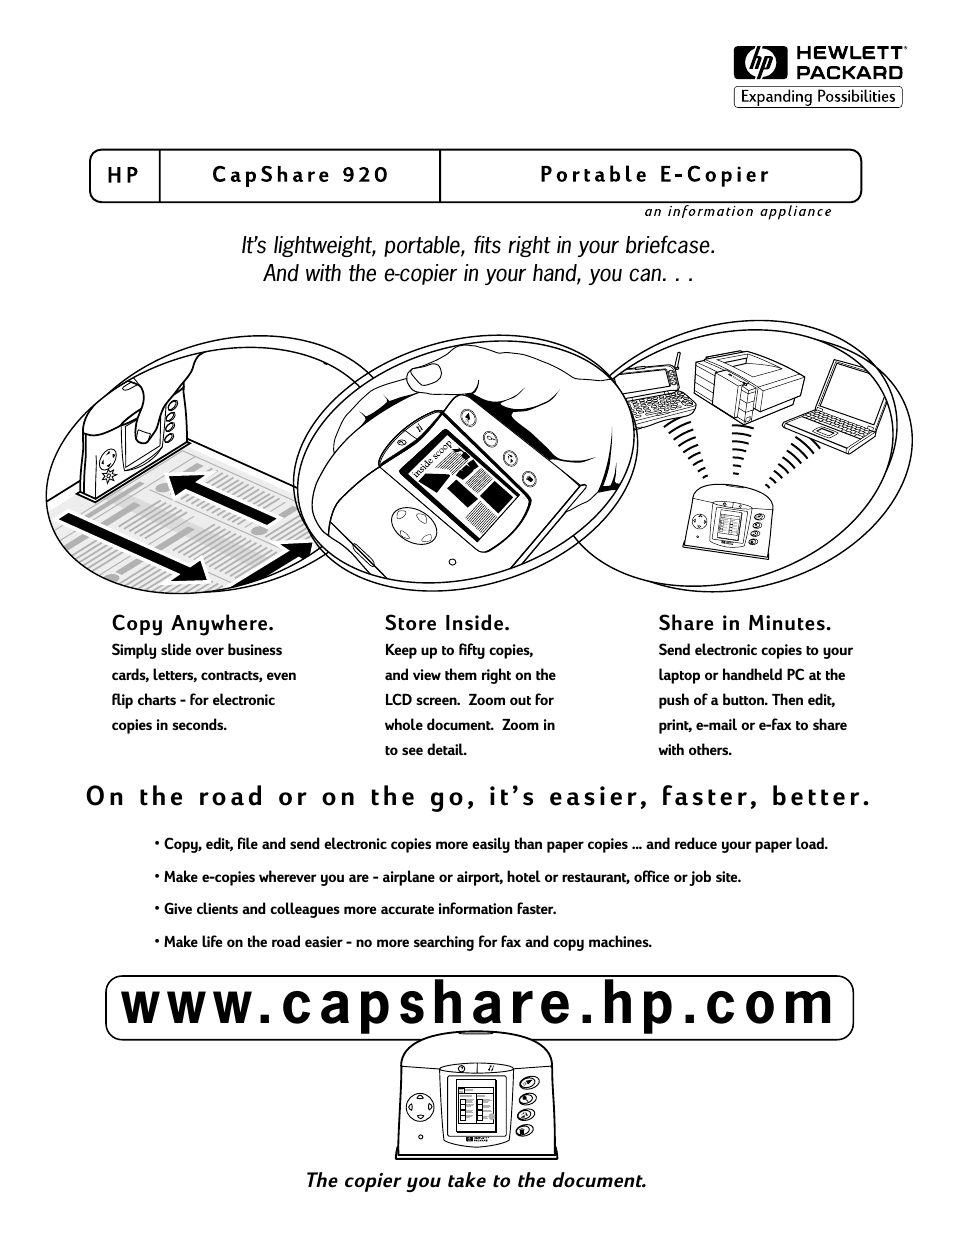 CapShare 920